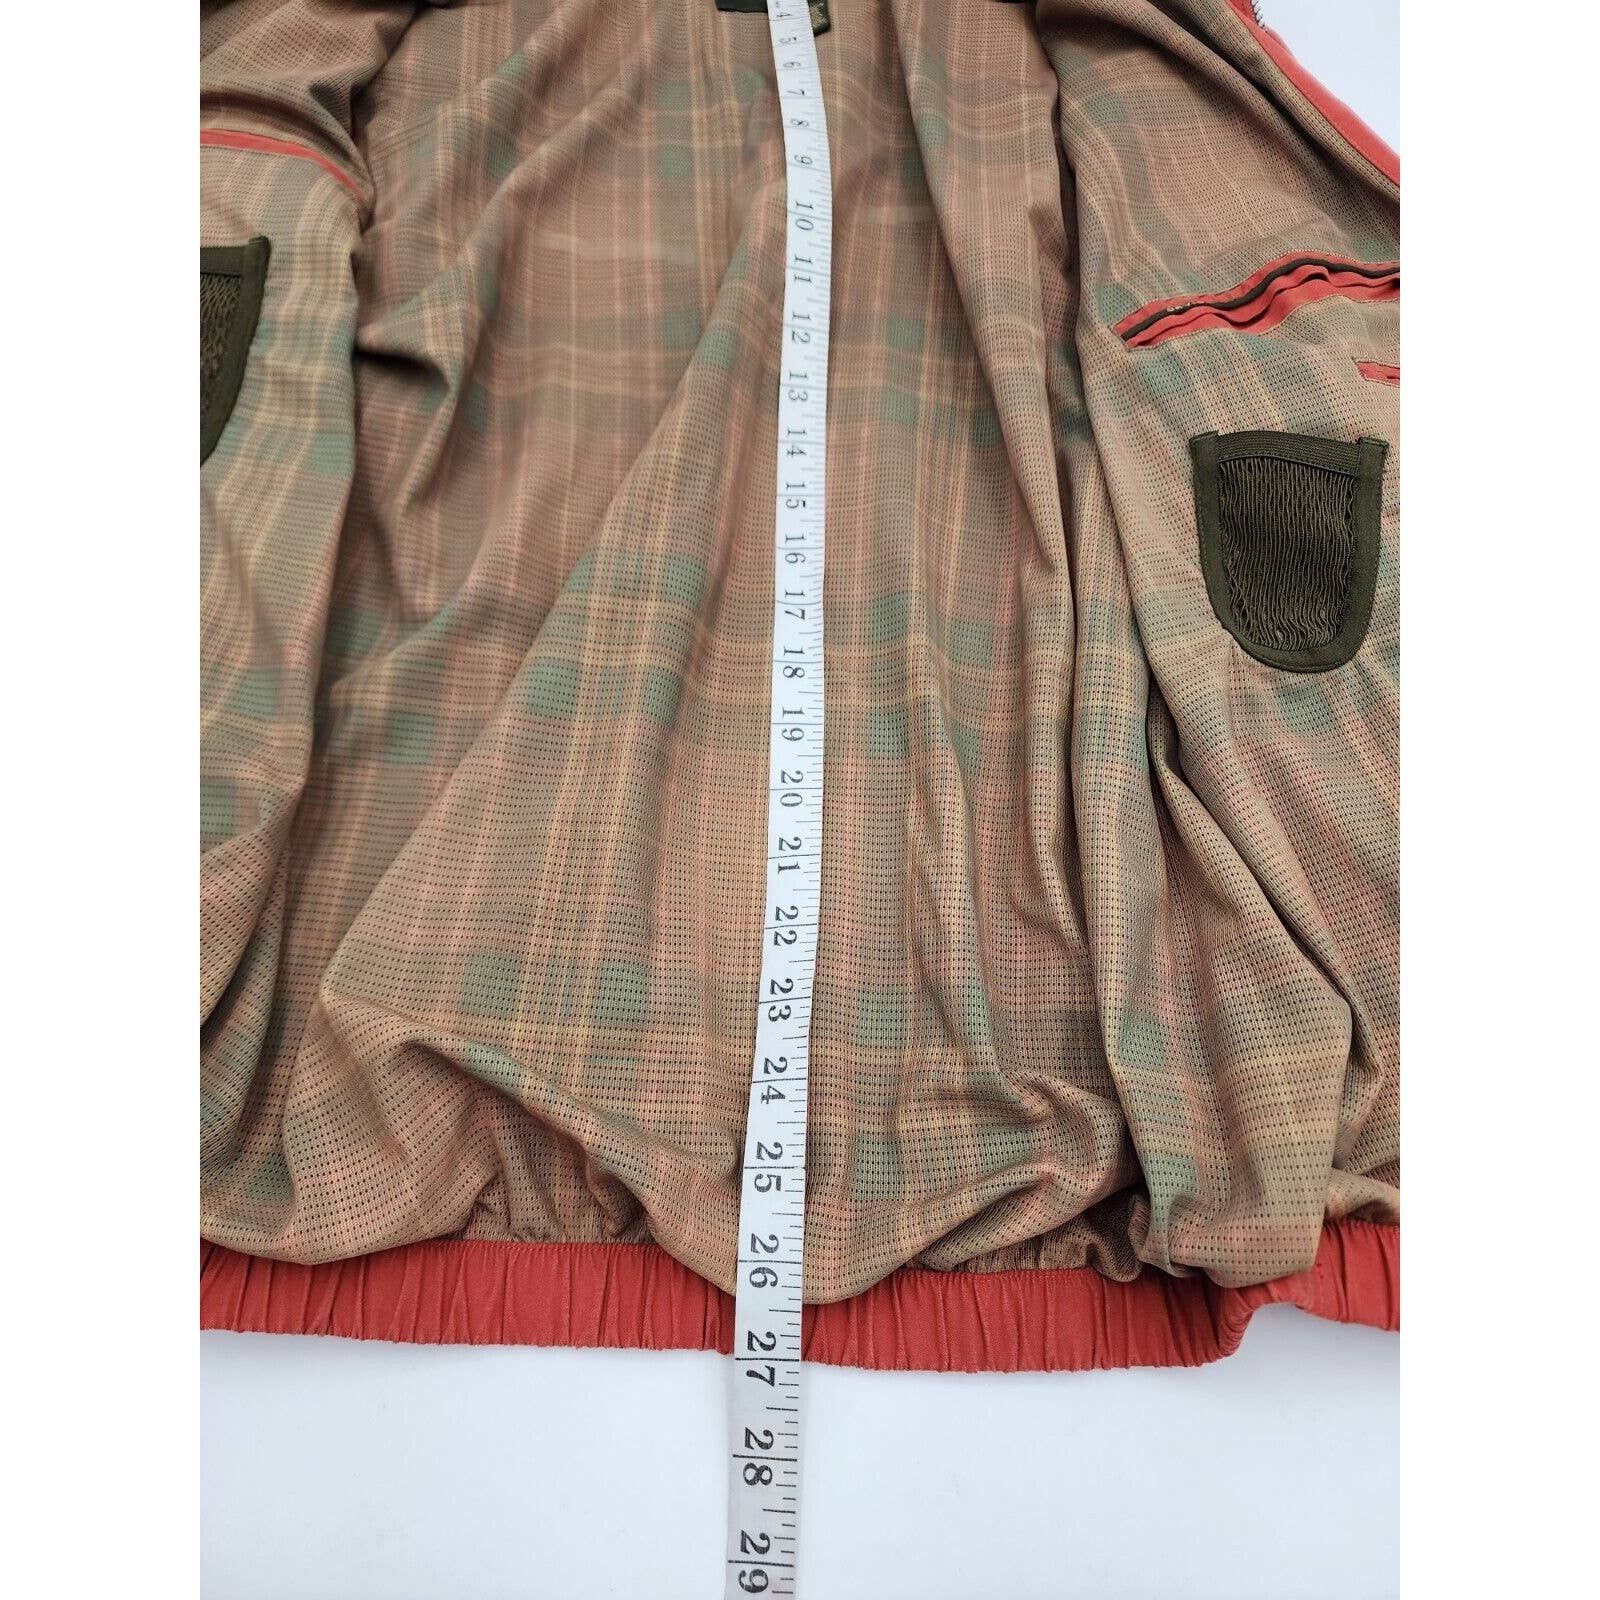 Orvis Orvis Signature Series Jacket Soft Faux Suede Burnt Orange Size US M / EU 48-50 / 2 - 12 Thumbnail